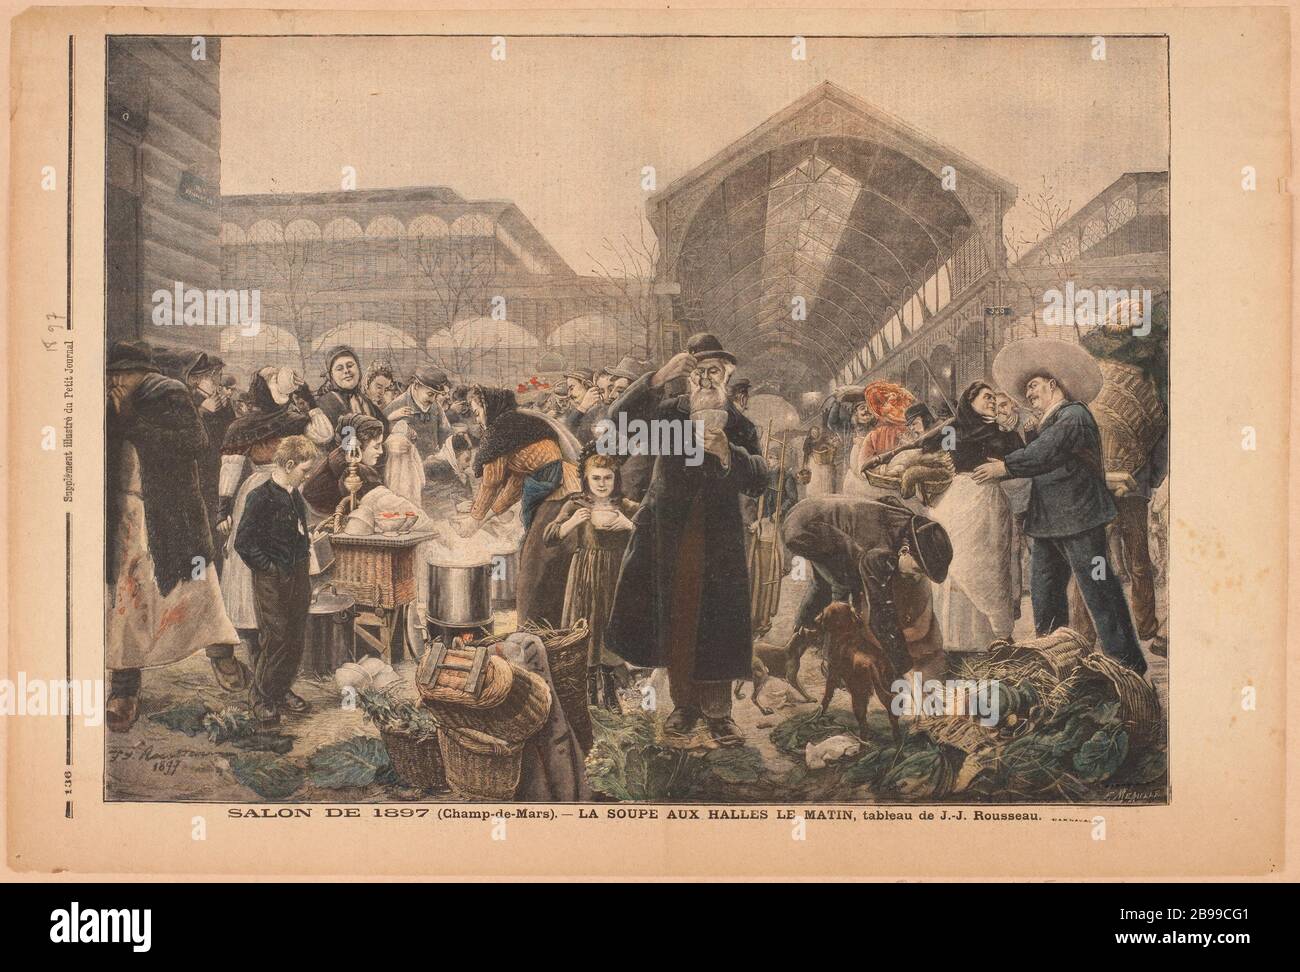 Zuppa Halles mattina Fortuné-Louis Méaulle (1844-1901). 'Salon de 1897 (Champ-de-Mars) - la soupe aux Halles le matin'. Parigi, musée Carnavalet. Foto Stock